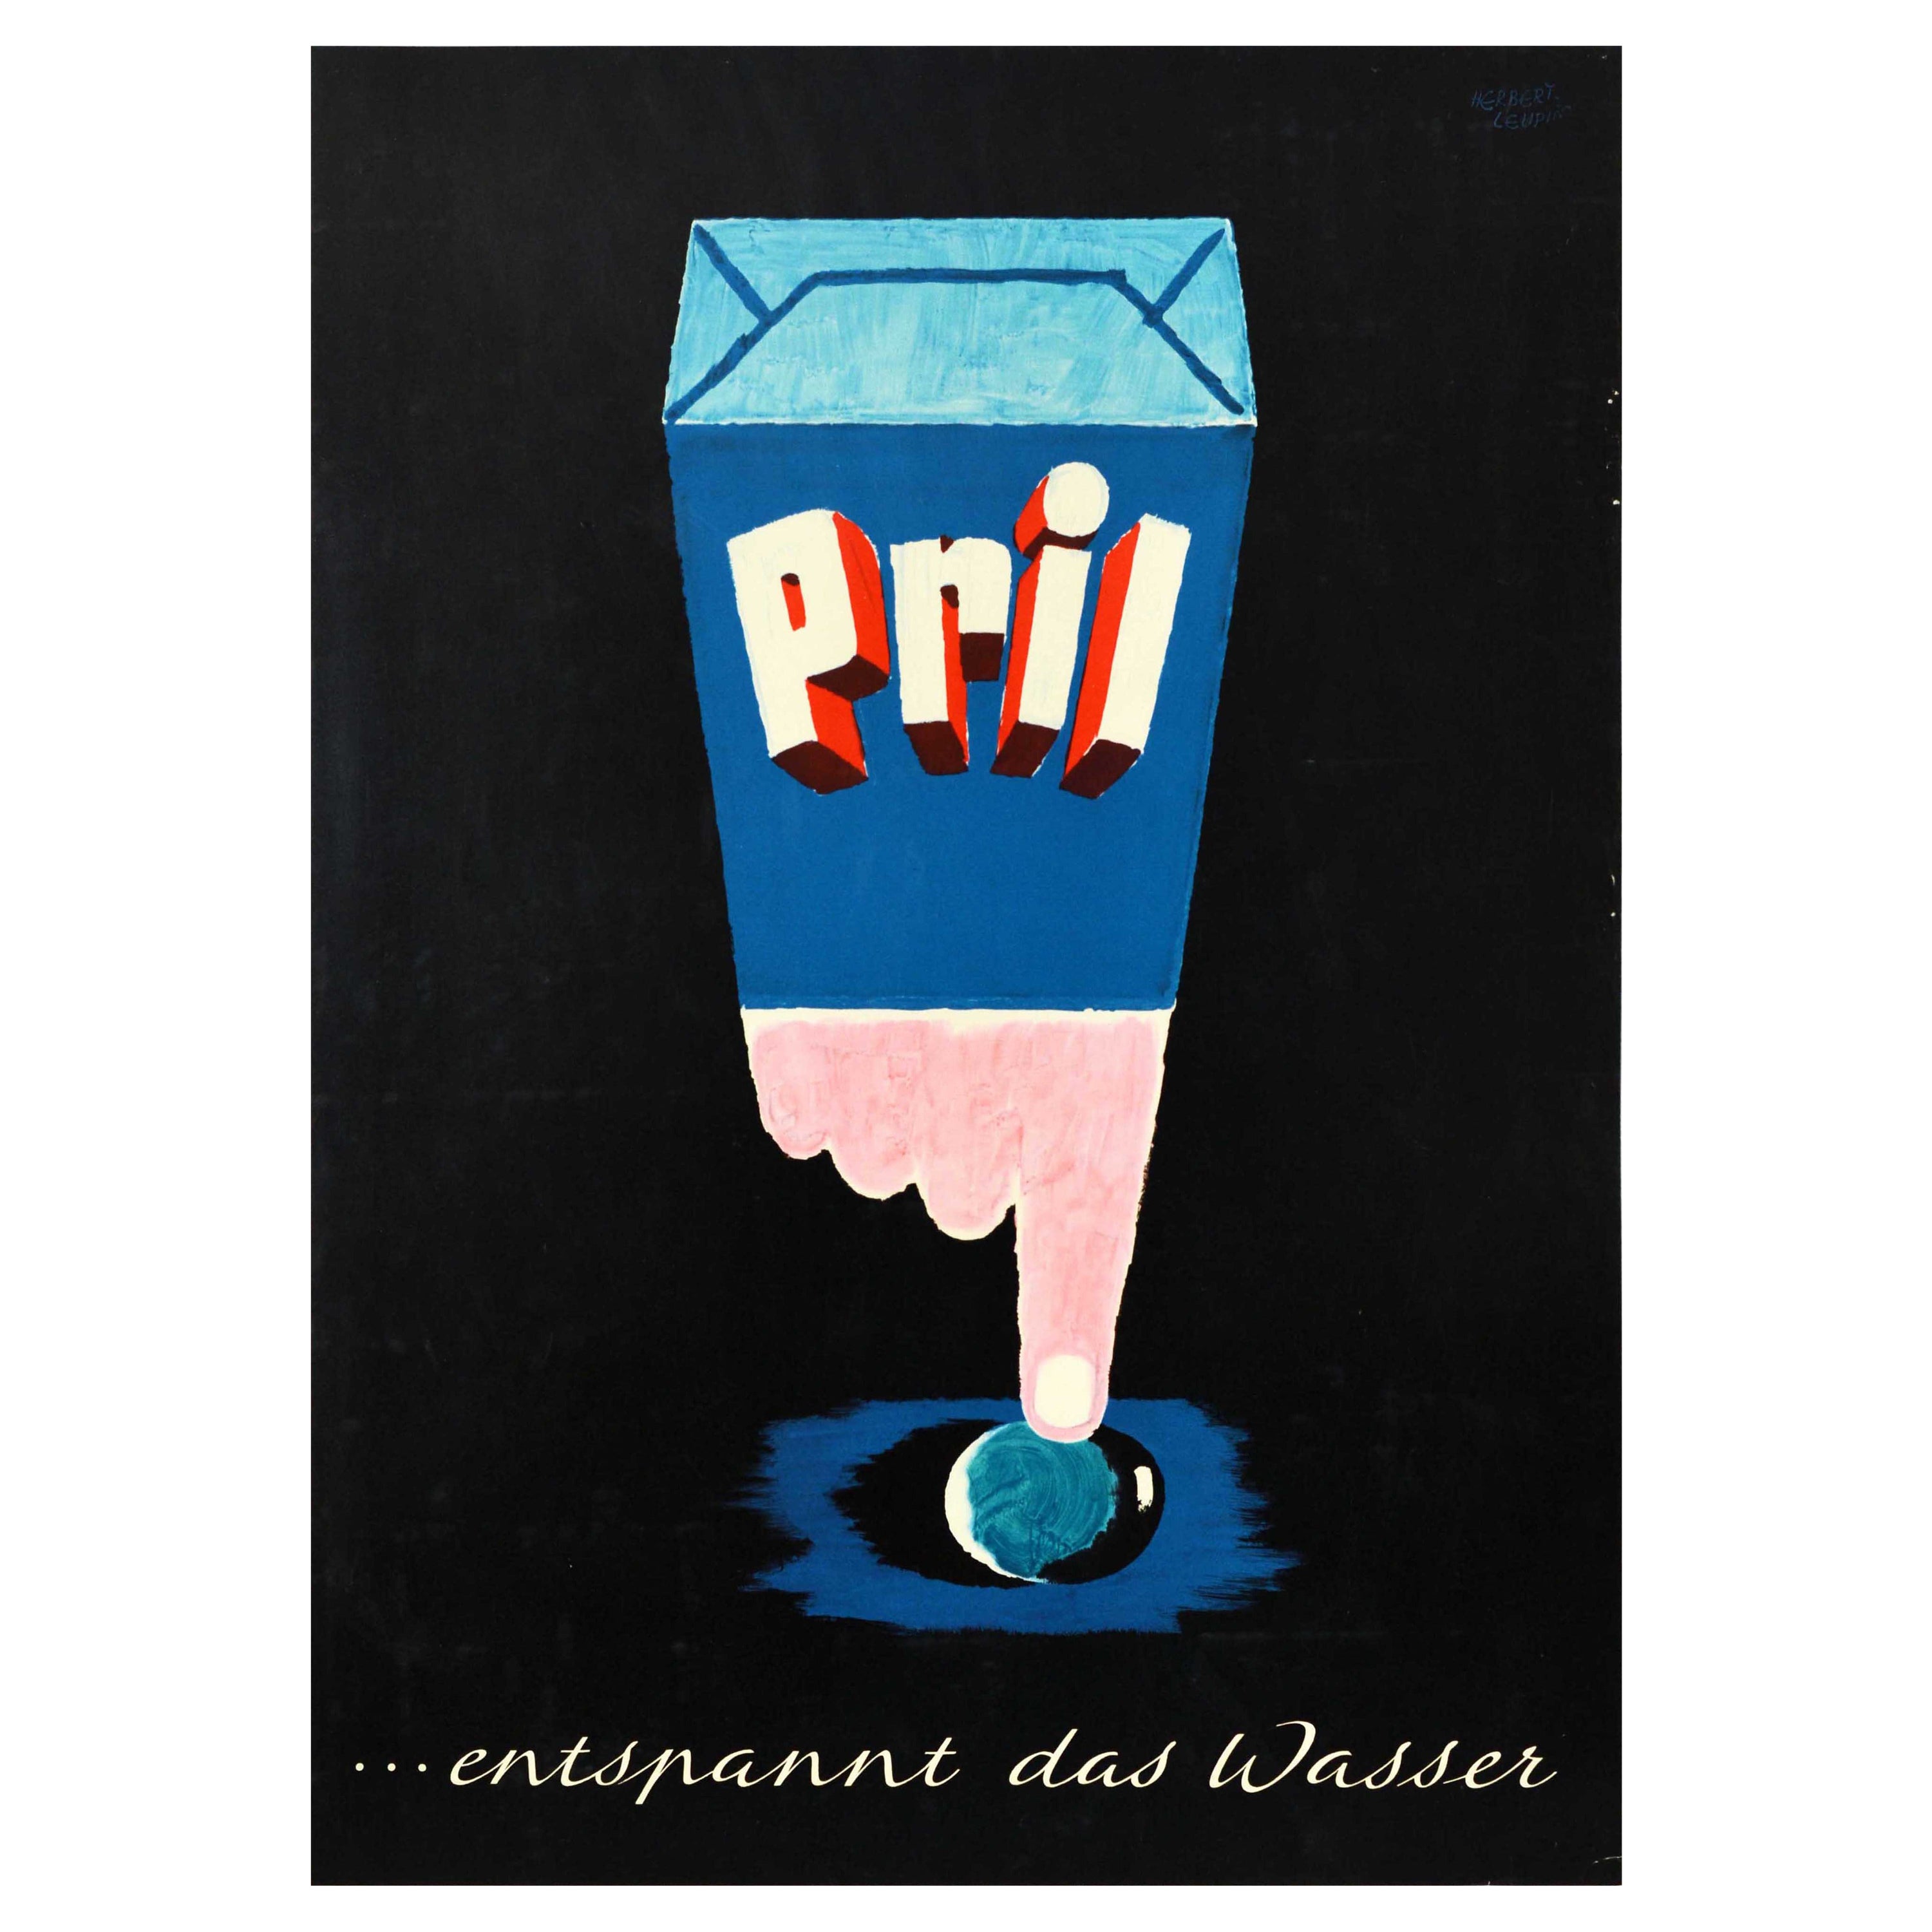 Affiche publicitaire originale vintage pour Pril Washing Up, la poudre se détend sur l'eau